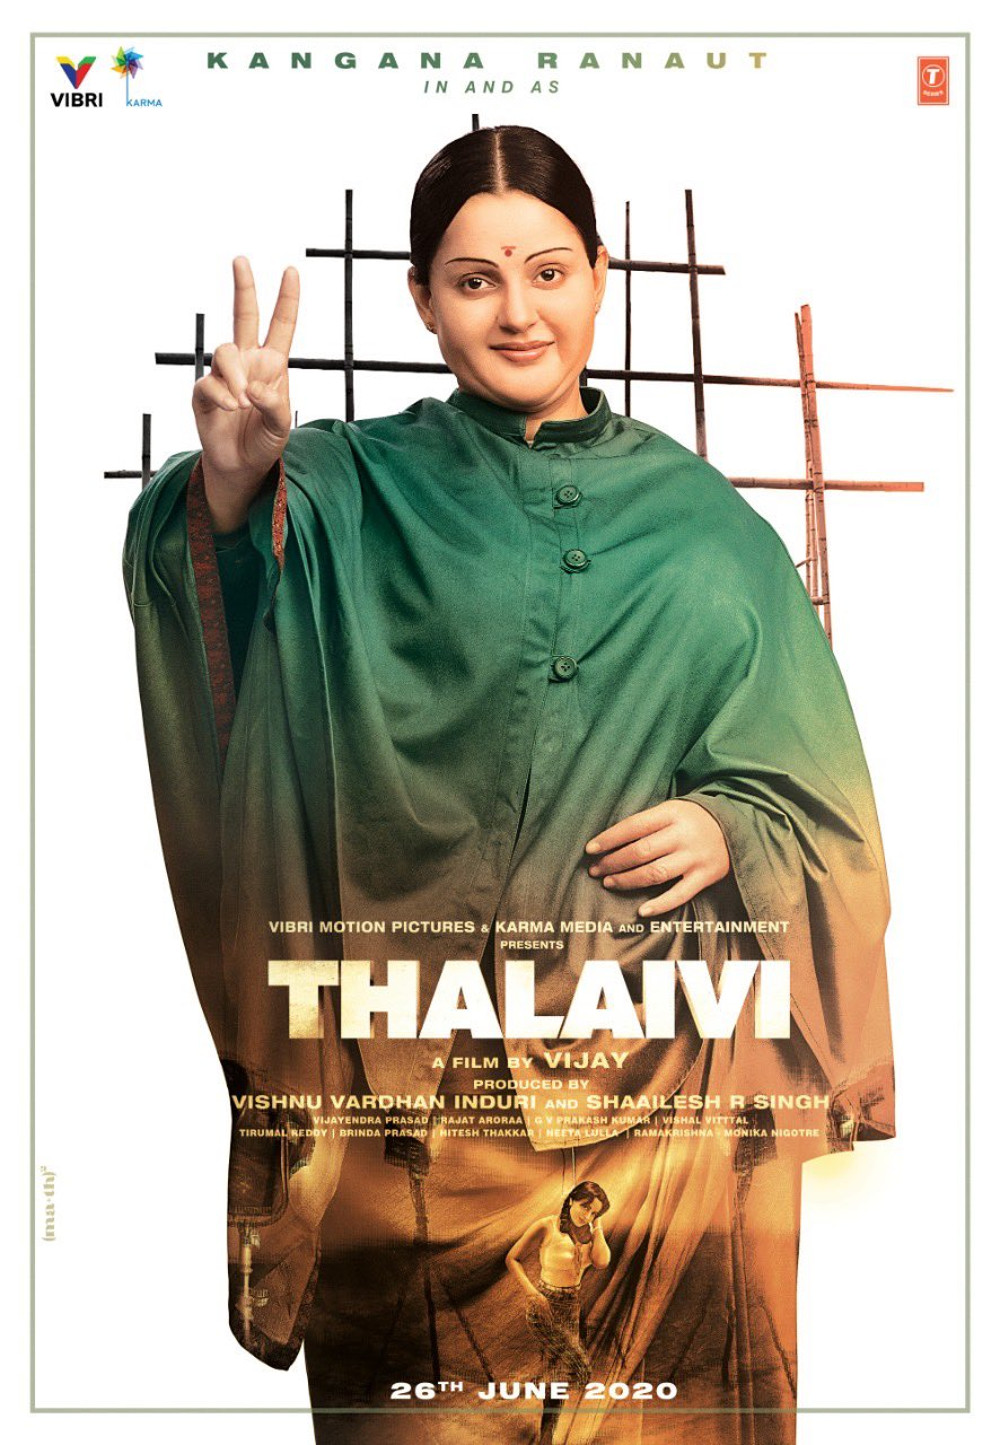 Kangana Ranaut Thalaivi First Look Poster HD. New Movie Posters